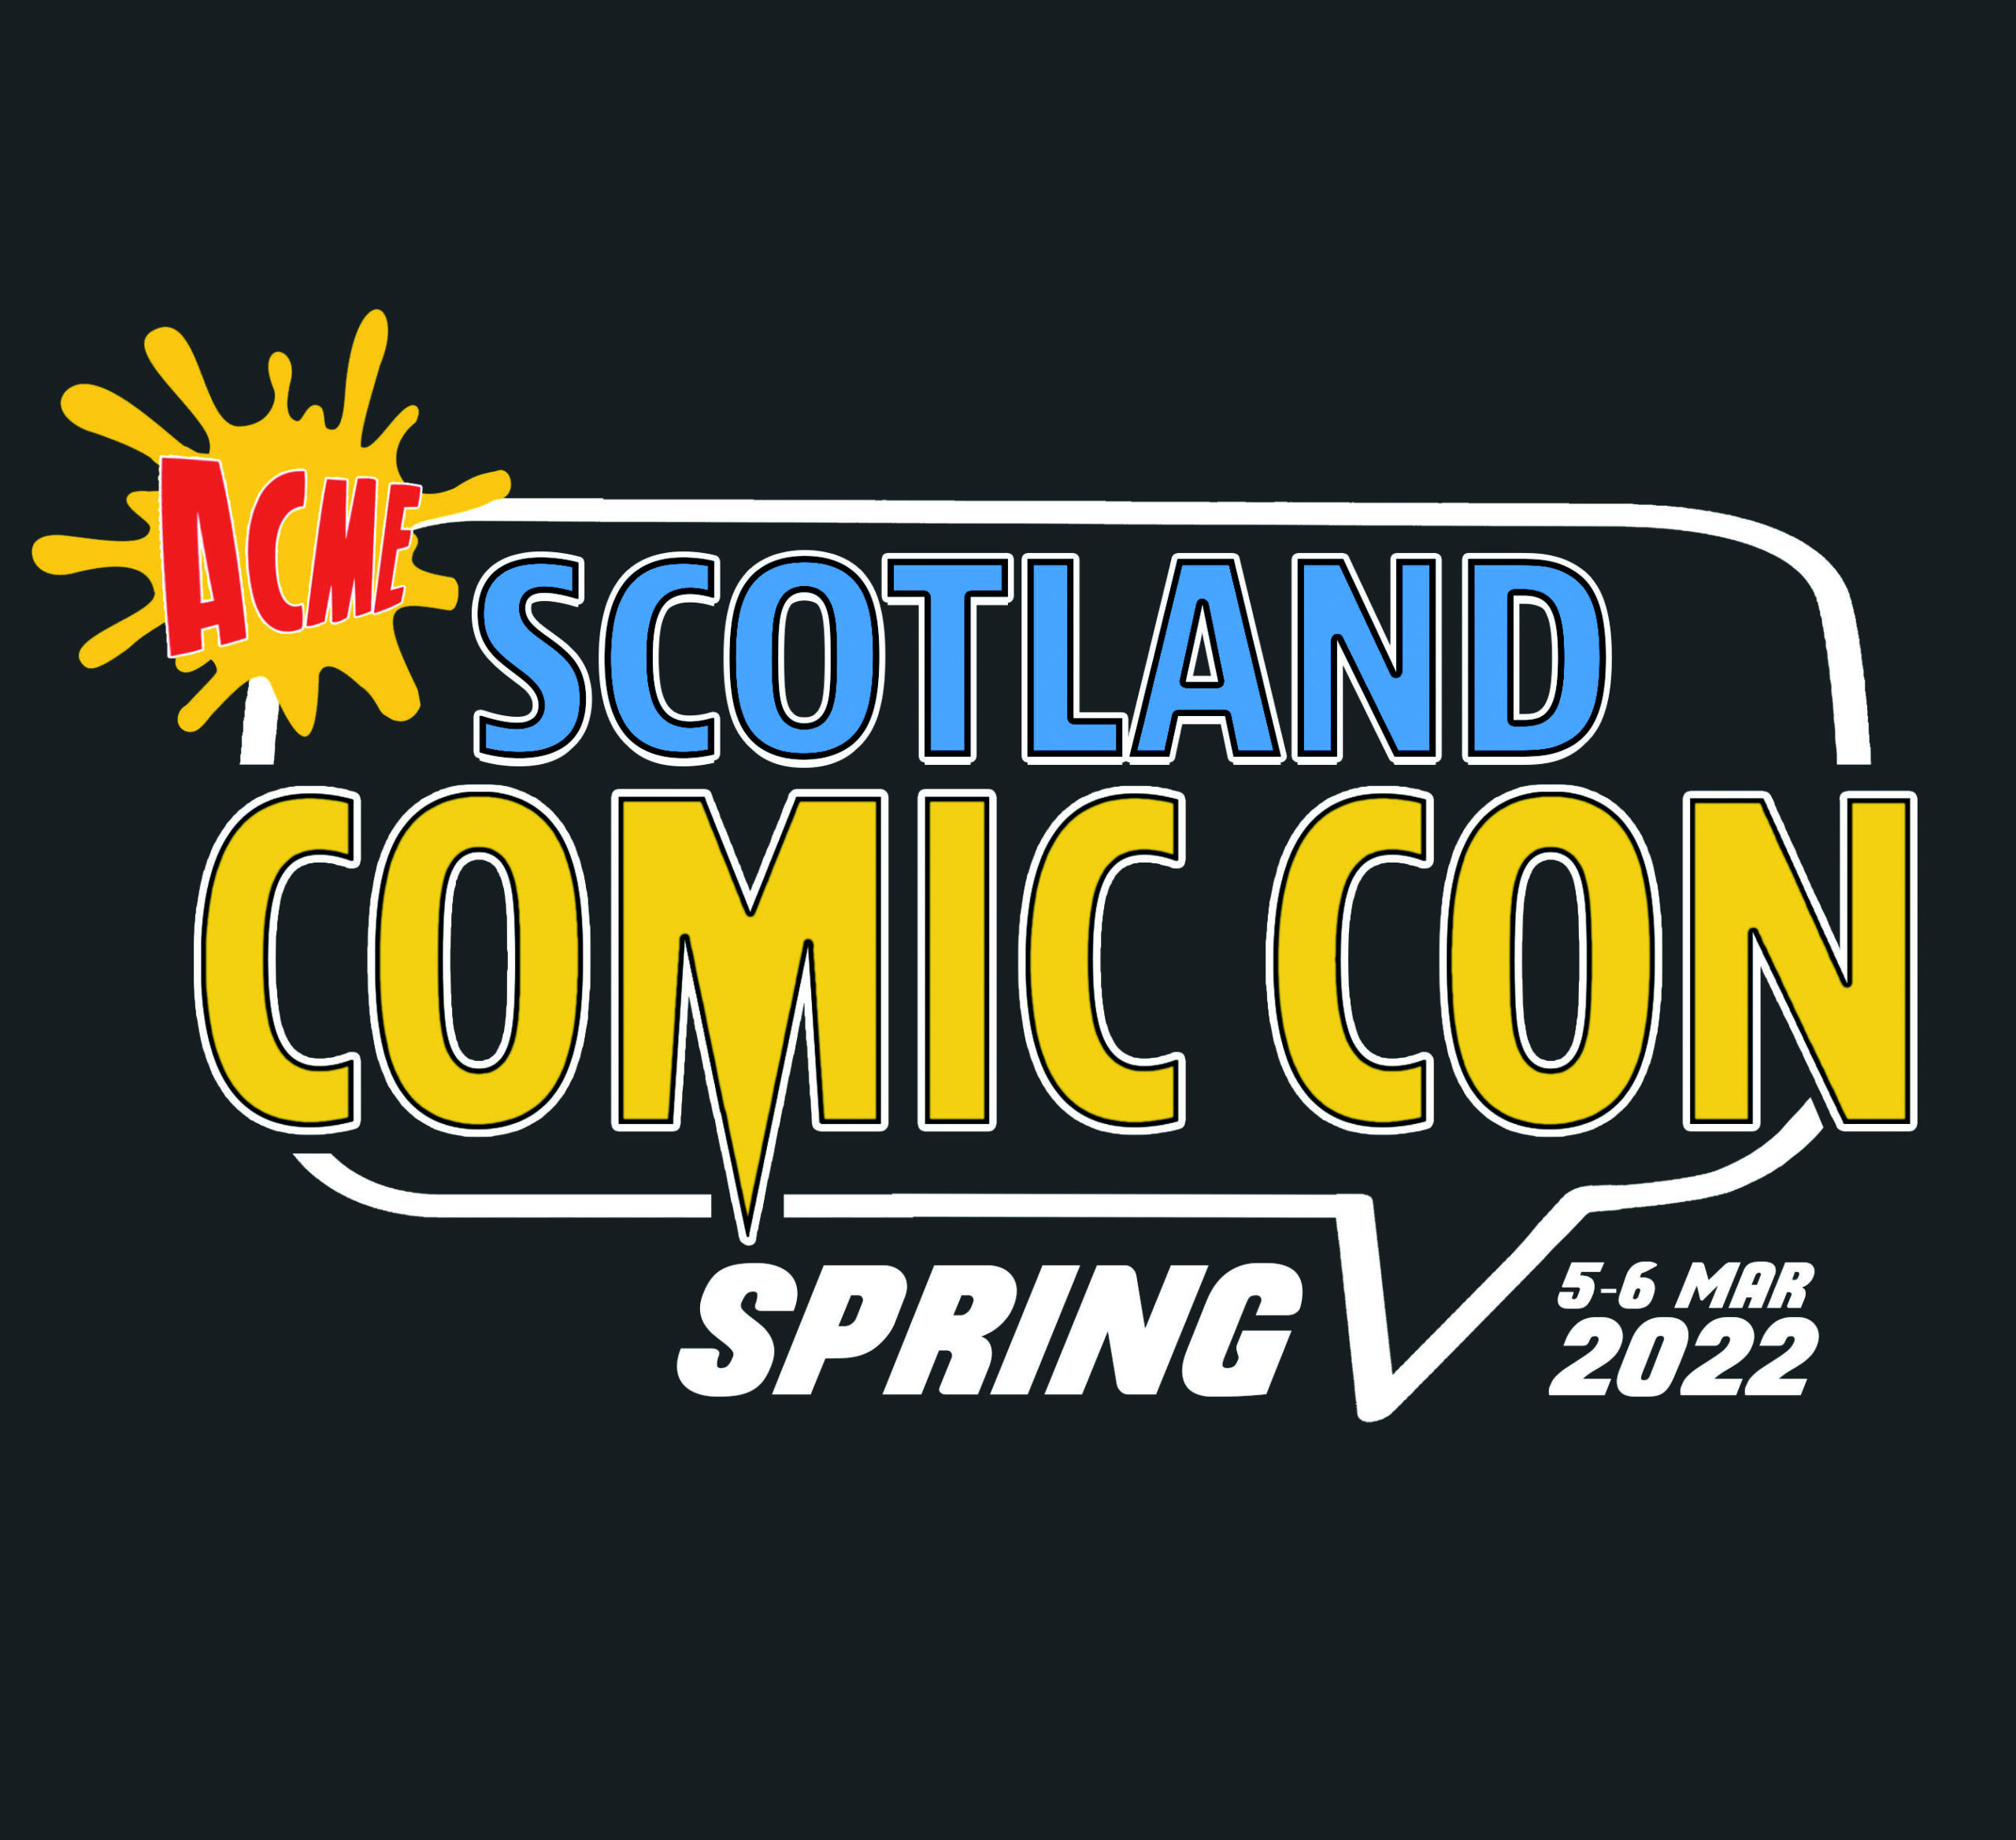 Acme Comic Con Scotland